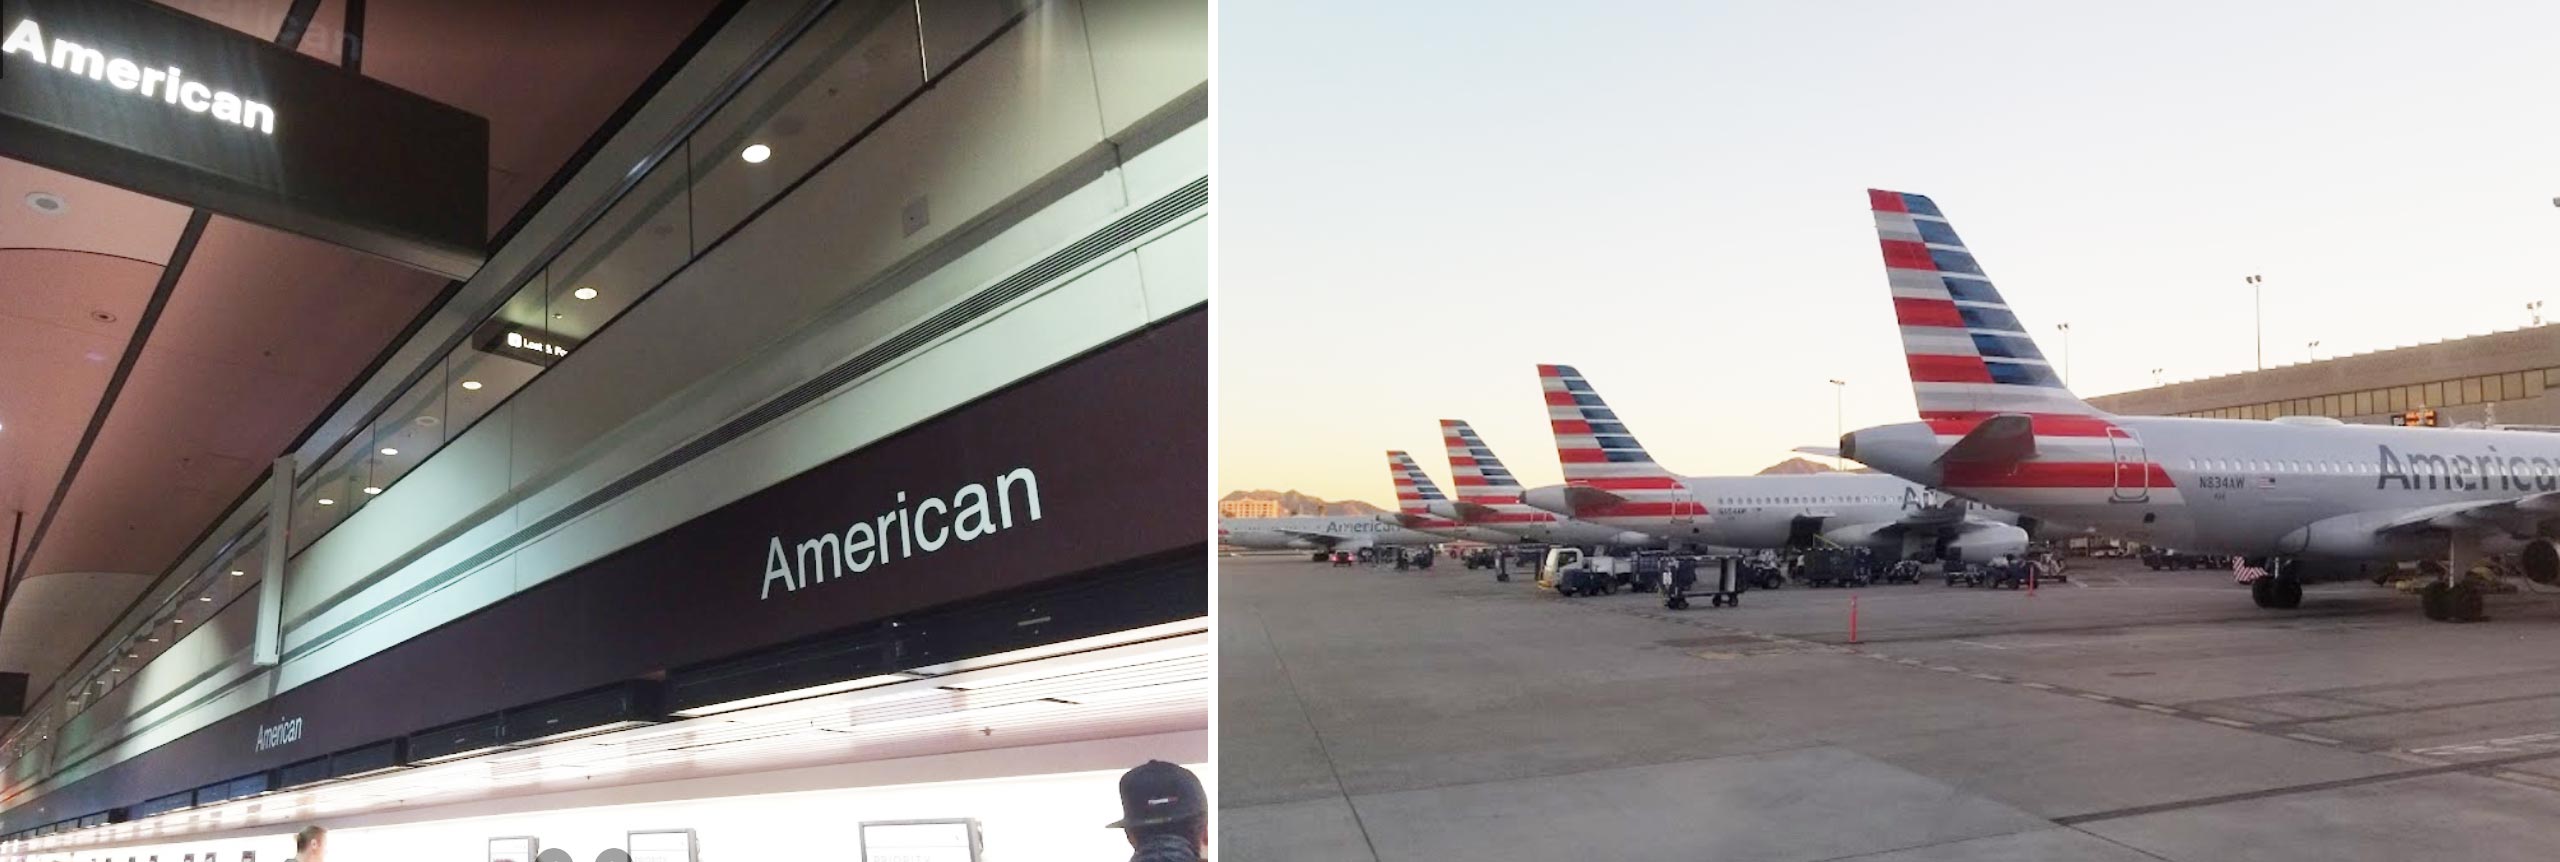 American Airlines las vegas